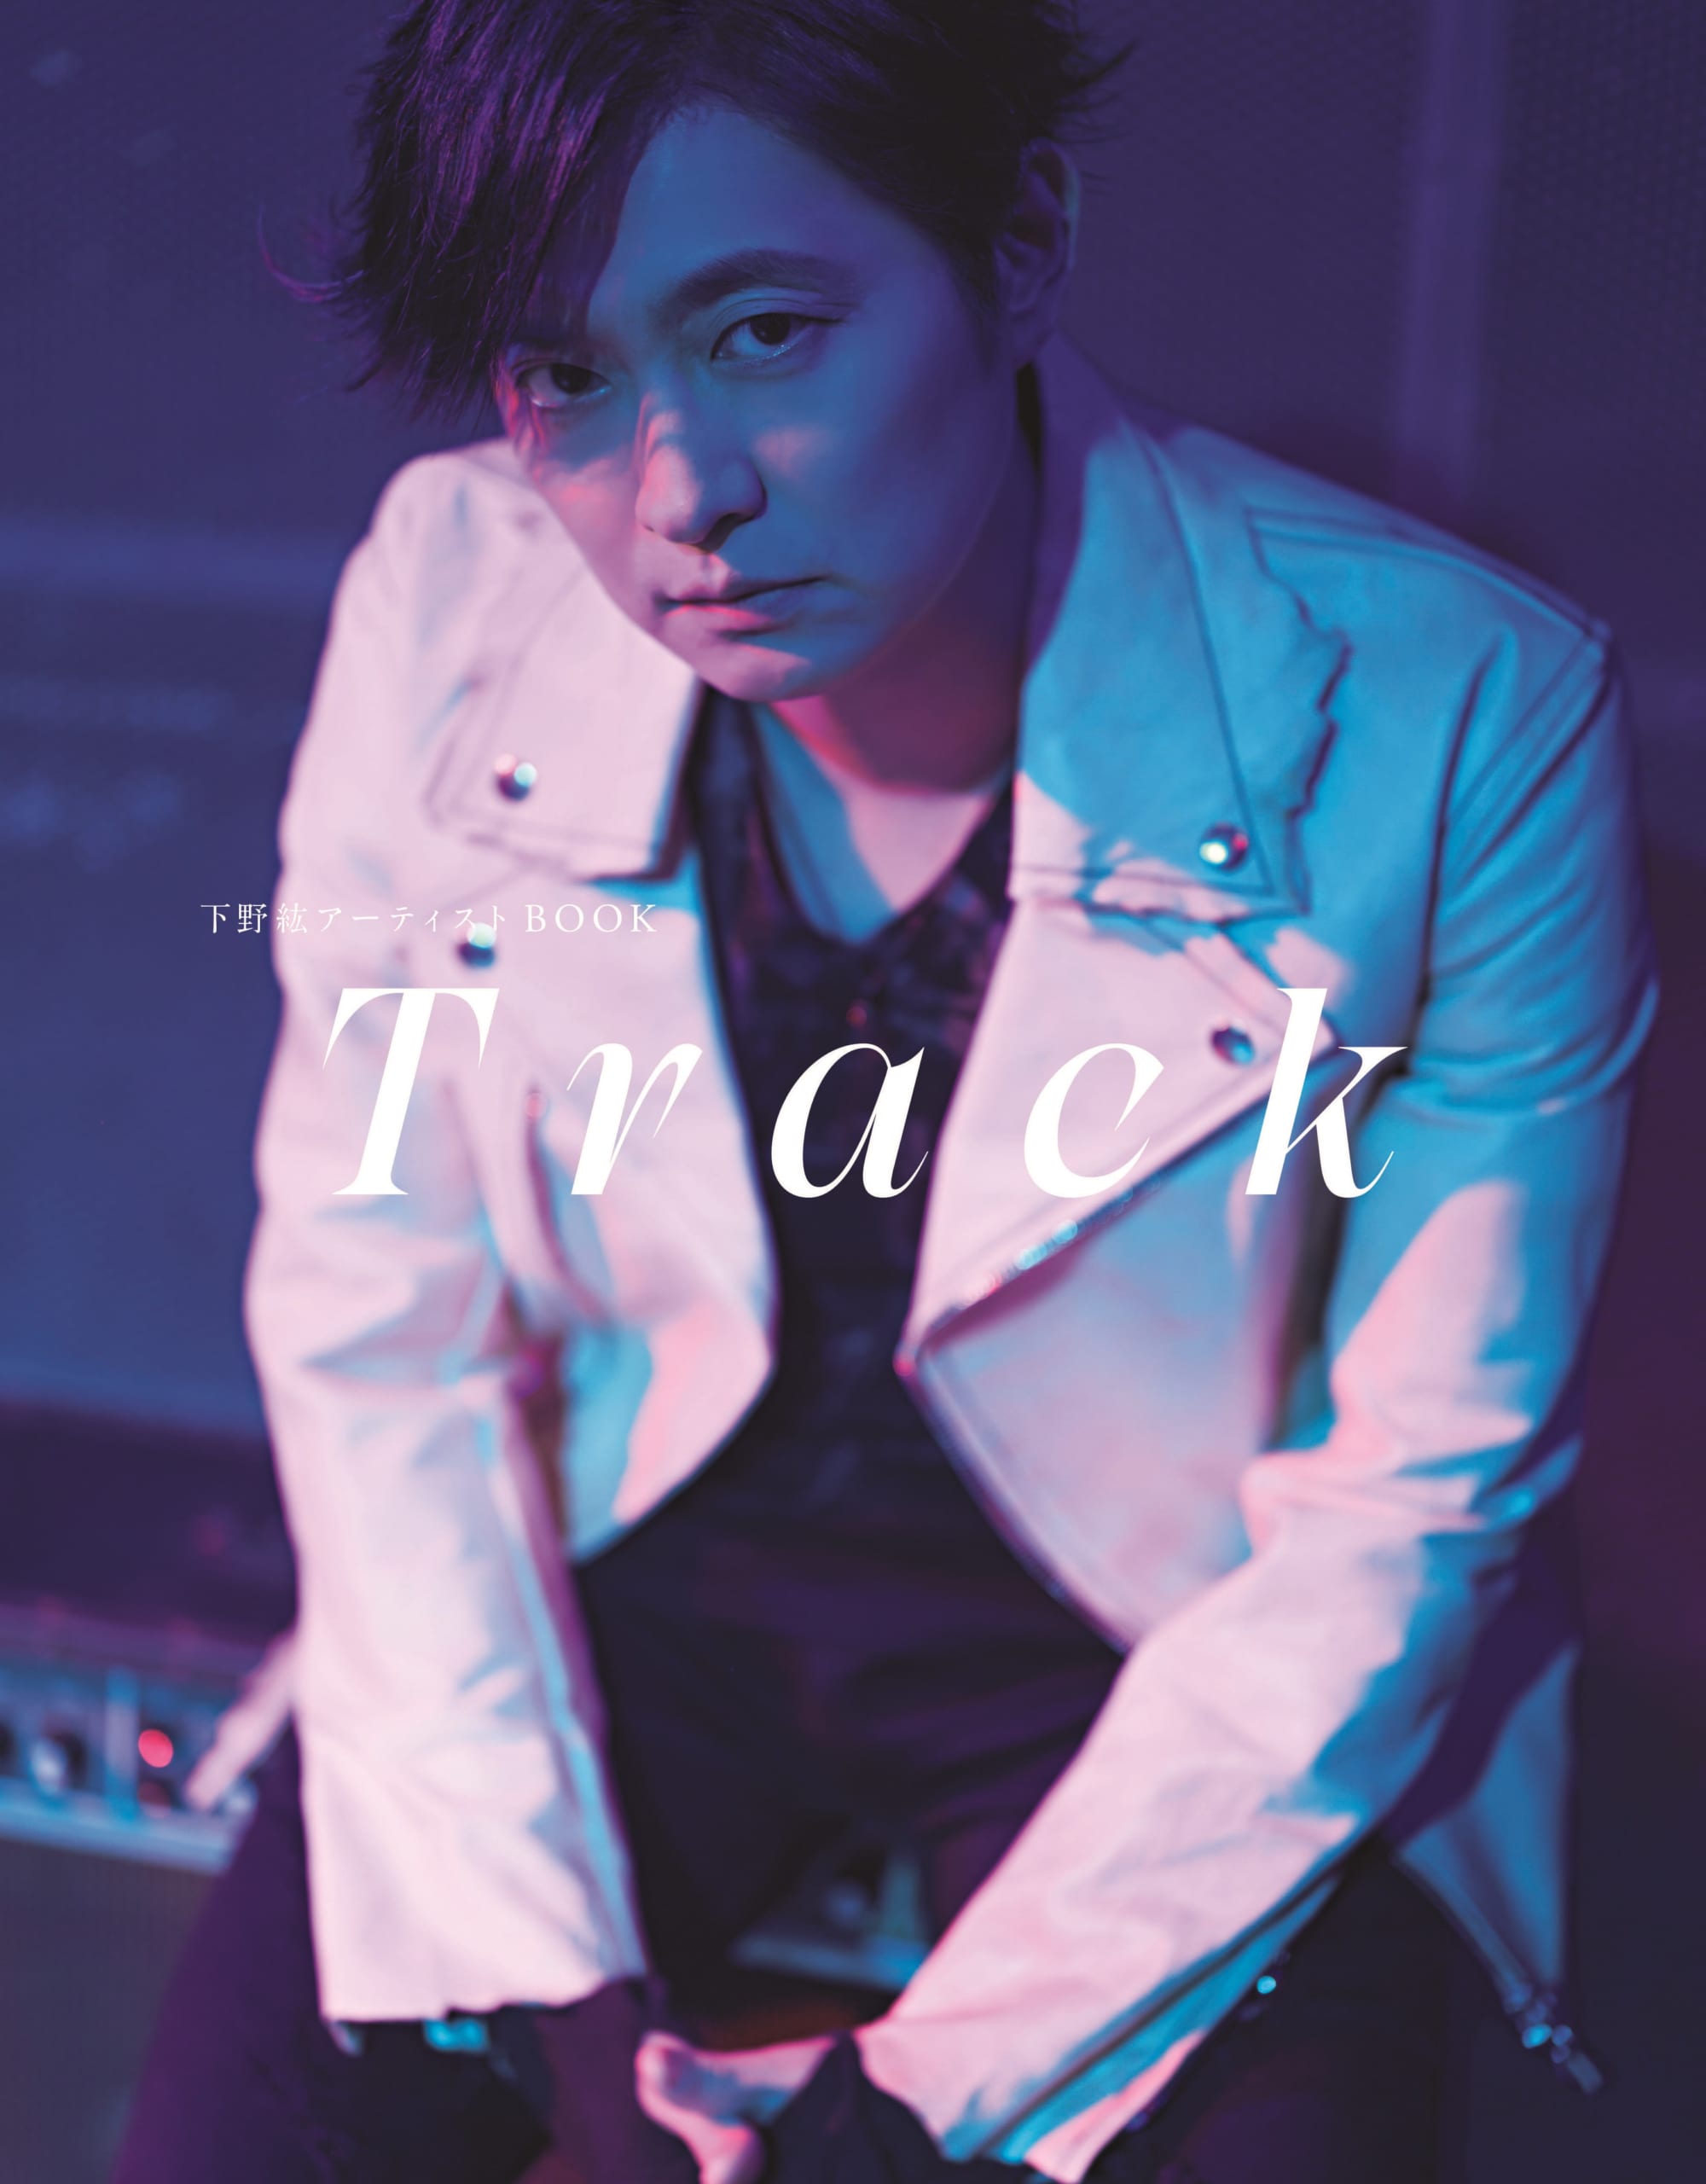 下野紘さん「アーティストBOOK Track」表紙&特典解禁！「思い出のアルバムとしても楽しめる」